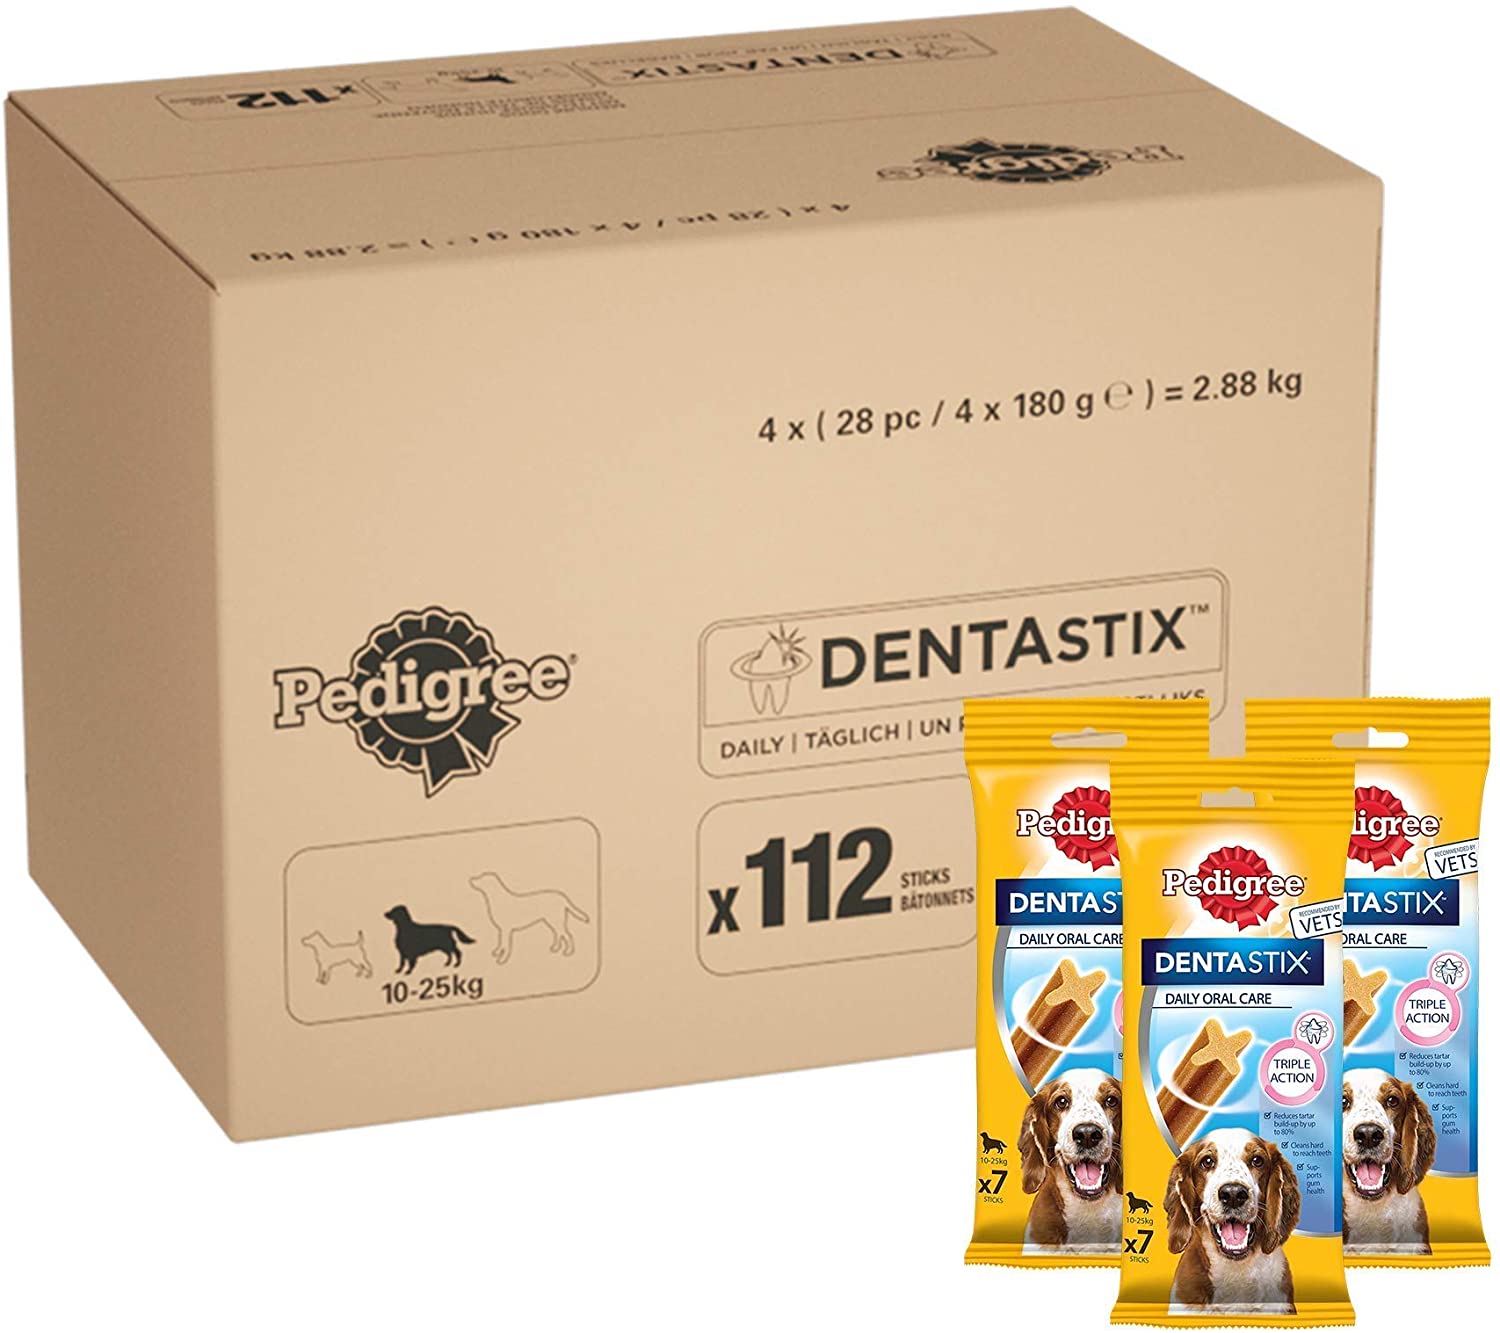  PEDIGREE DentaStix Daily Oral Care - Aperitivo para Cuidado de Dientes para Perros Que Ayuda a Reducir la formación de Placa y sarro (1 Paquete de 112 DentaStix) 